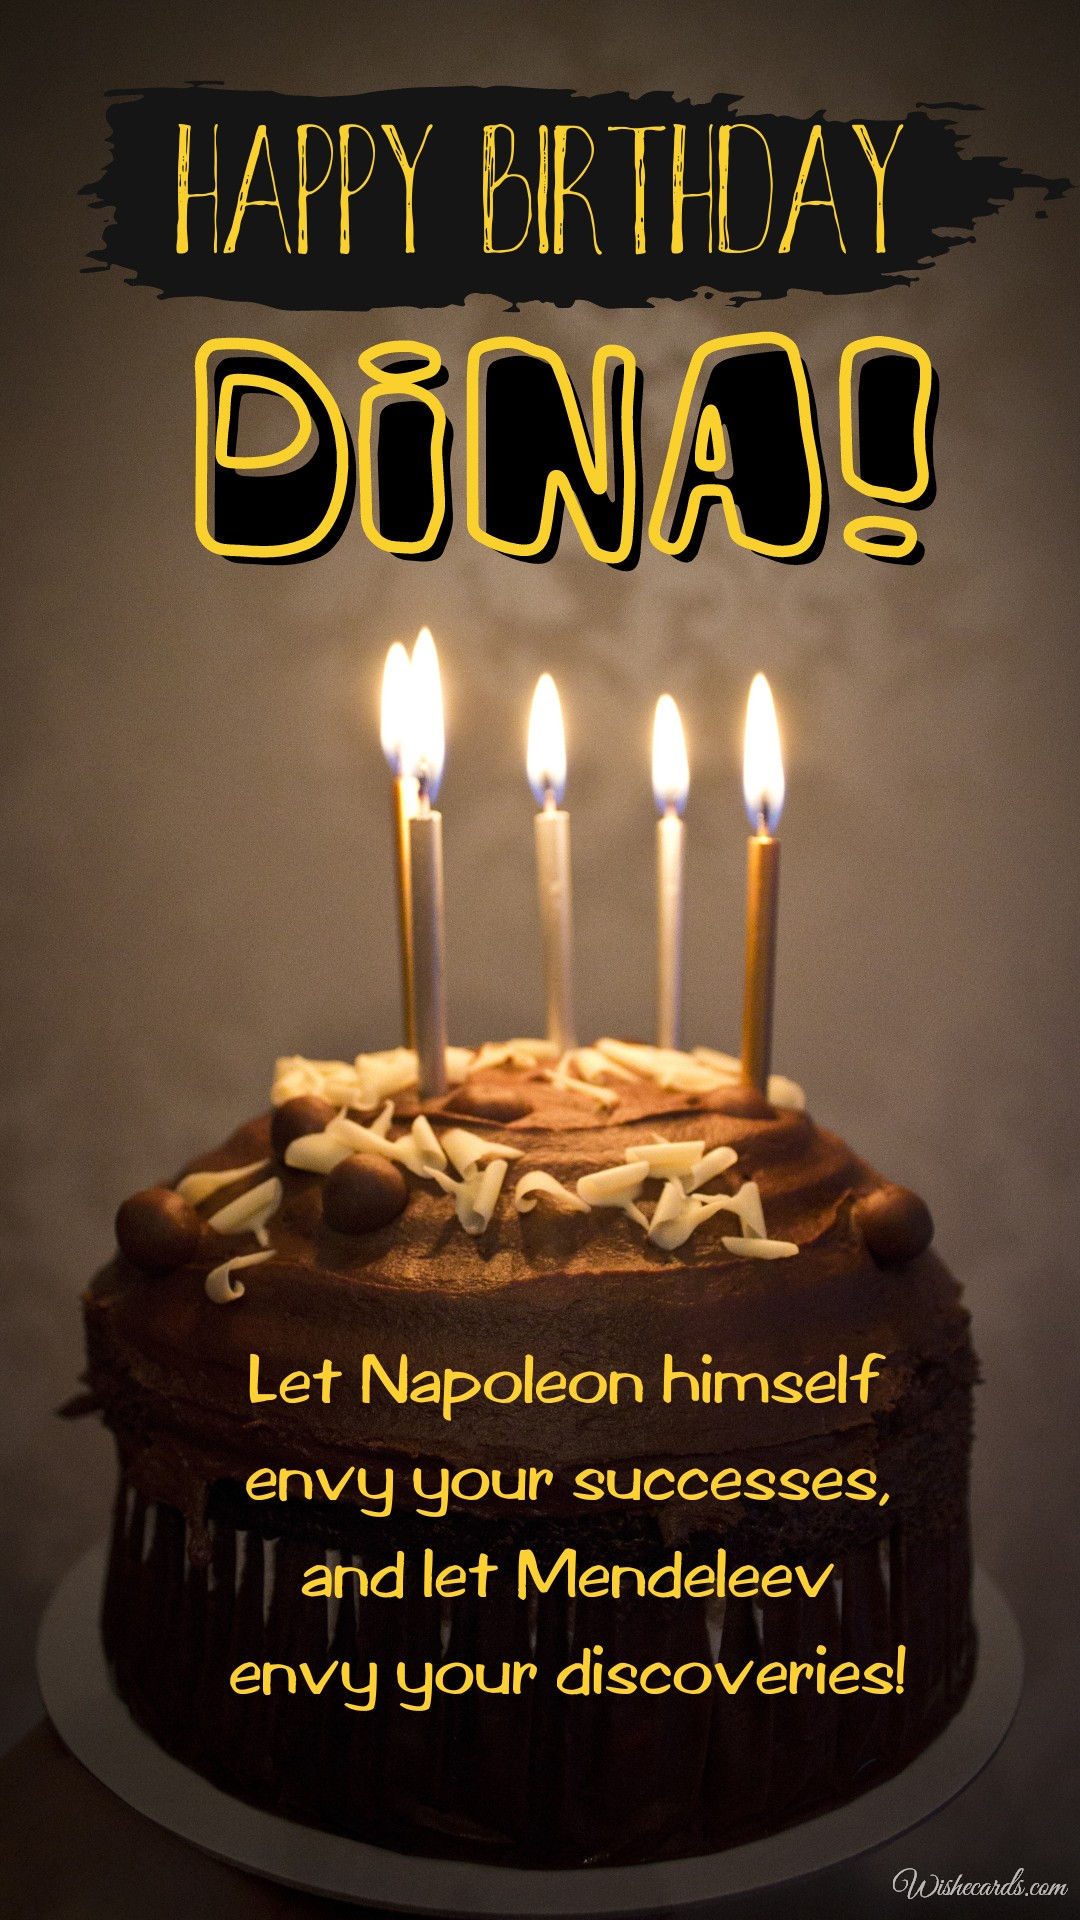 Happy Birthday to Dina